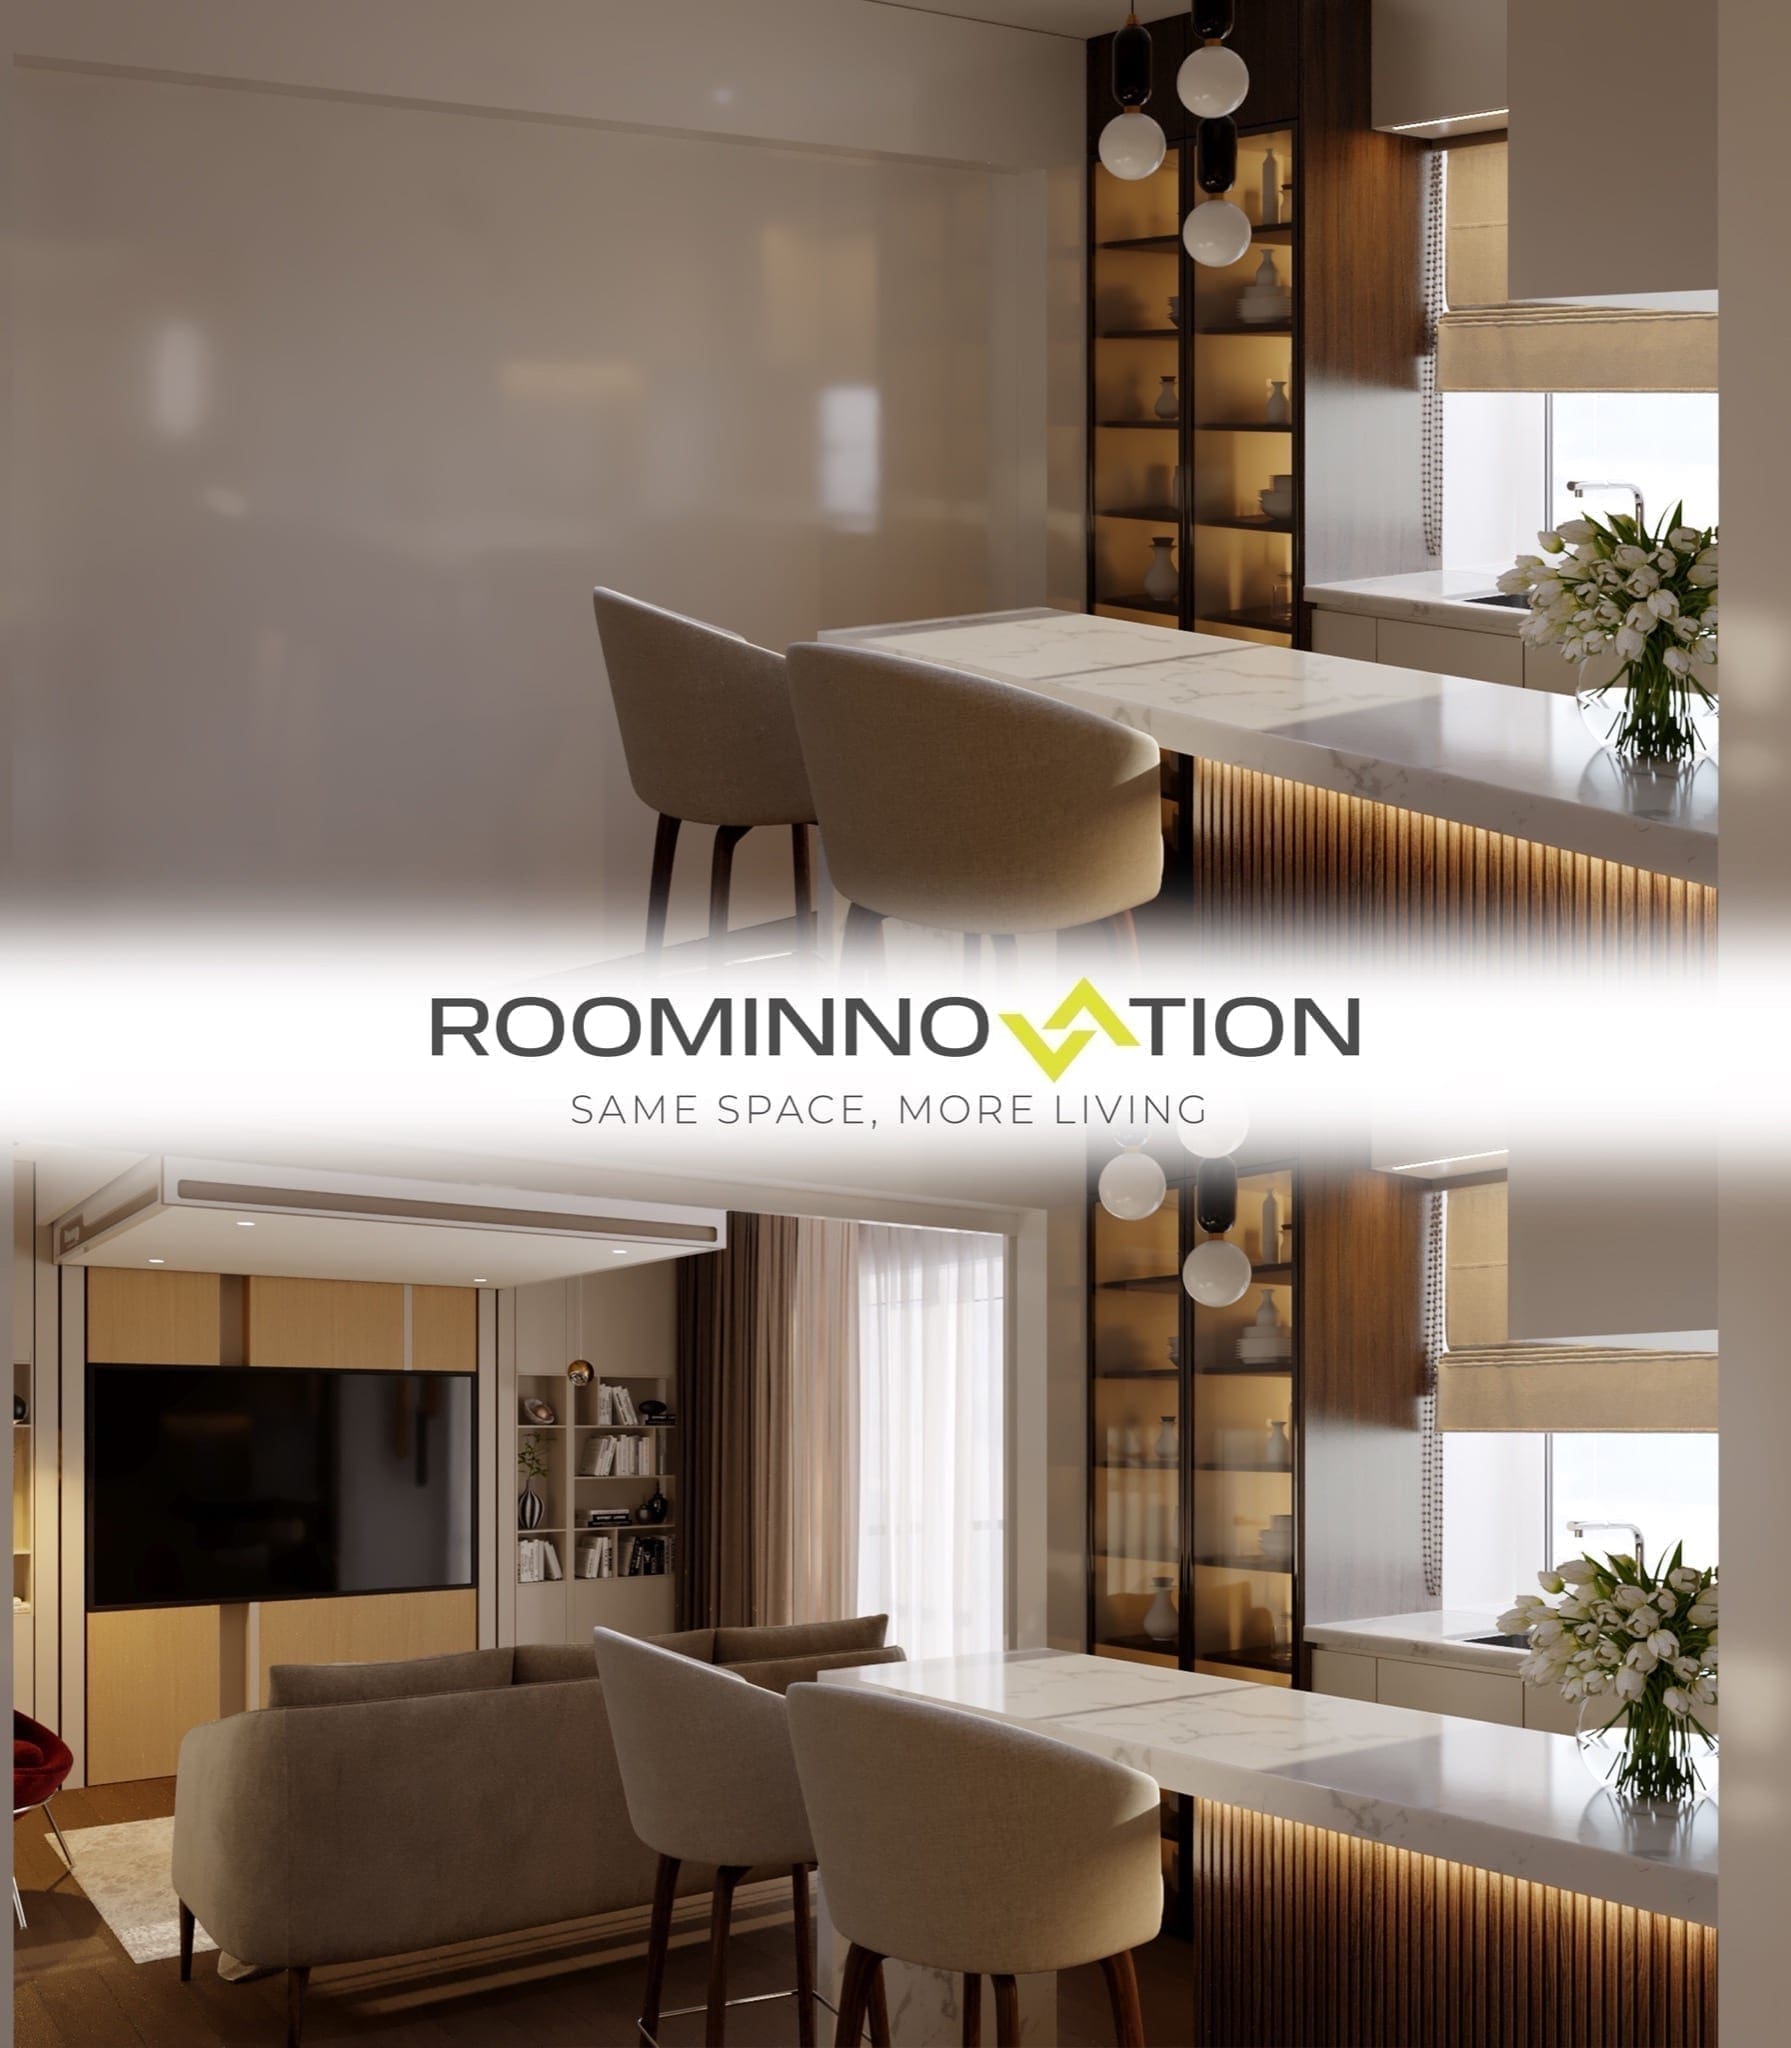 perete blur alb 1 copy - RoomInnovation, conceptul inovator care revoluționează conceptul clasic de apartament